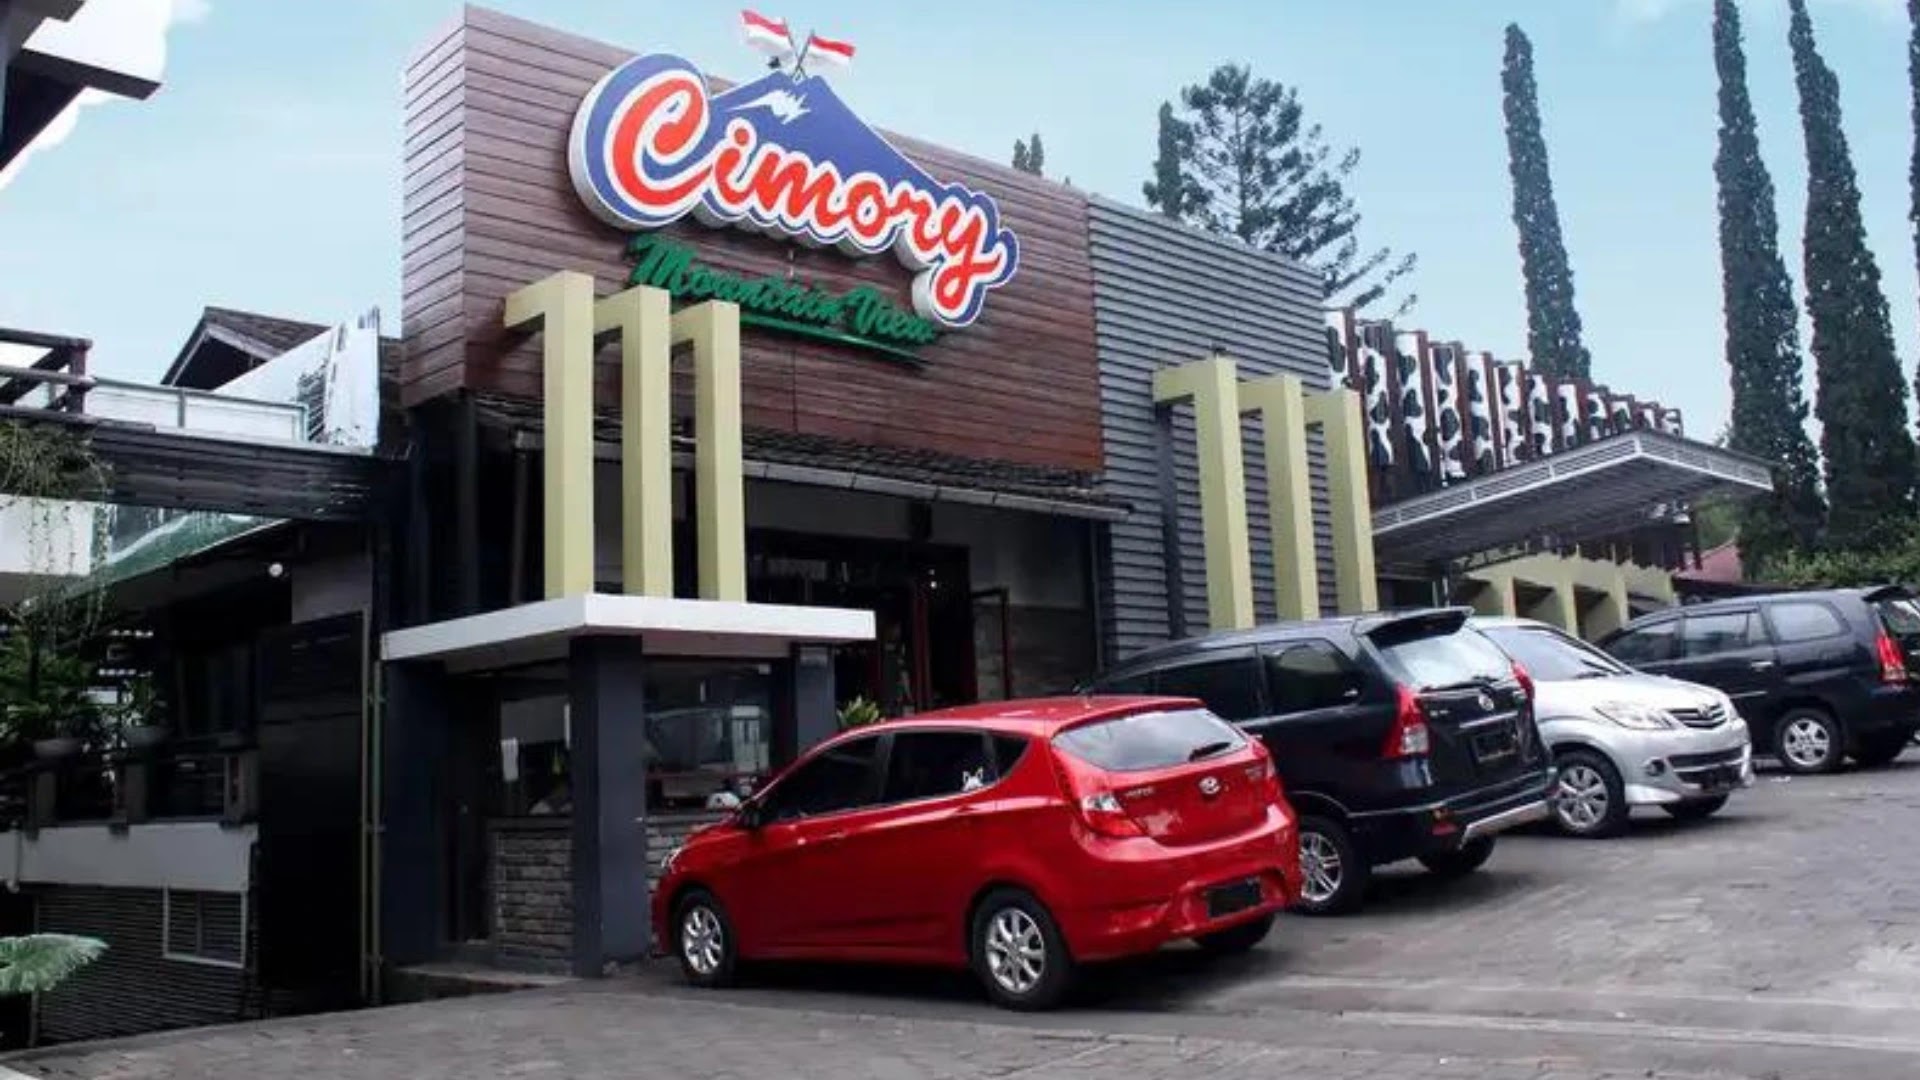 Cimory Mountain View: Mengintip Proses Pembuatan Susu Cimory Sambil Menyantap Hidangan Nikmat di Restoran